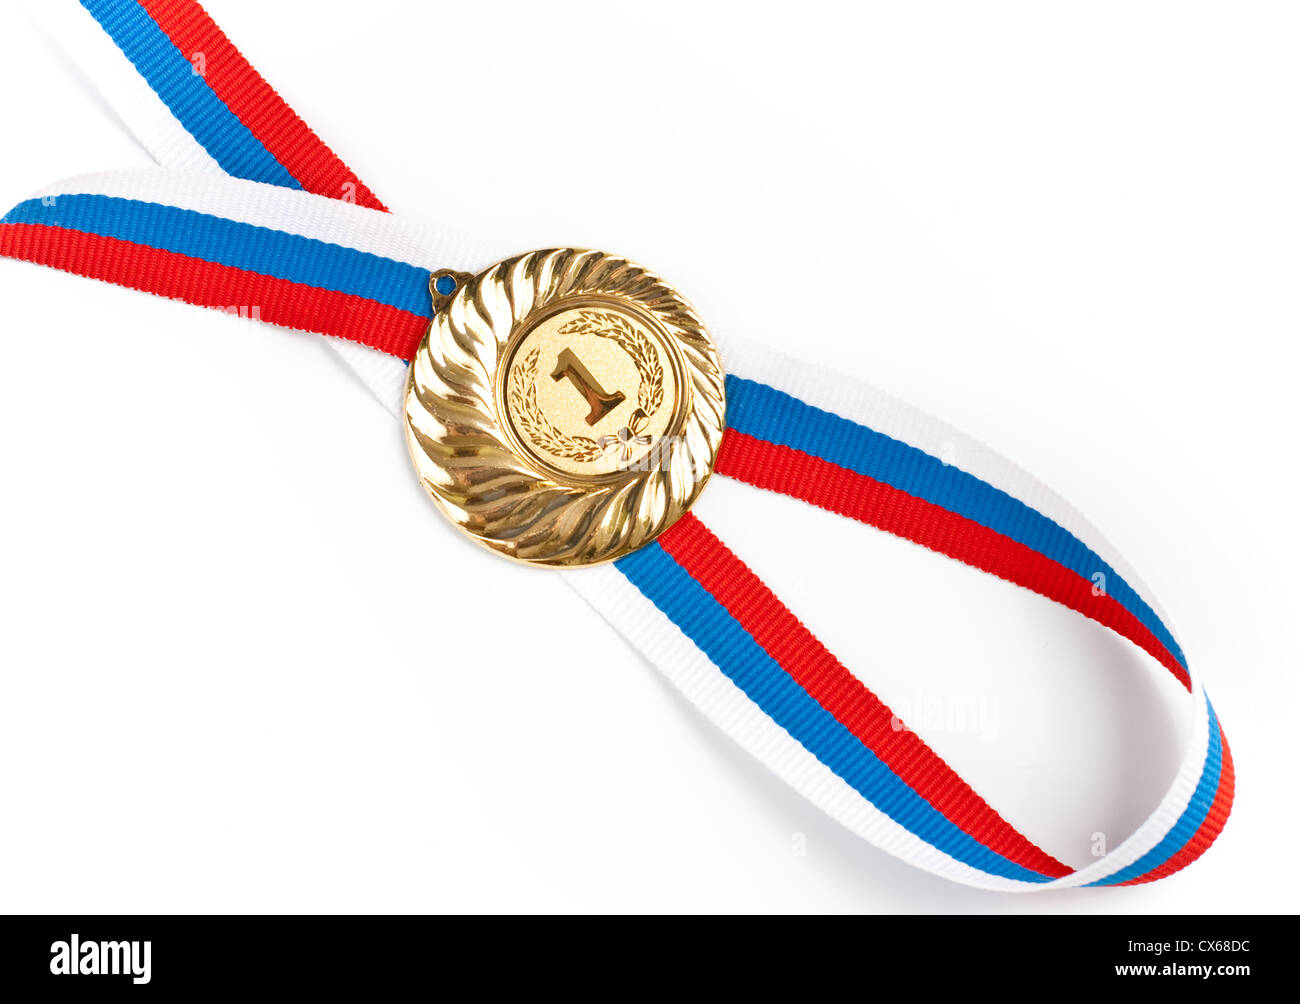 Medaglia d' oro isolato su bianco Foto Stock